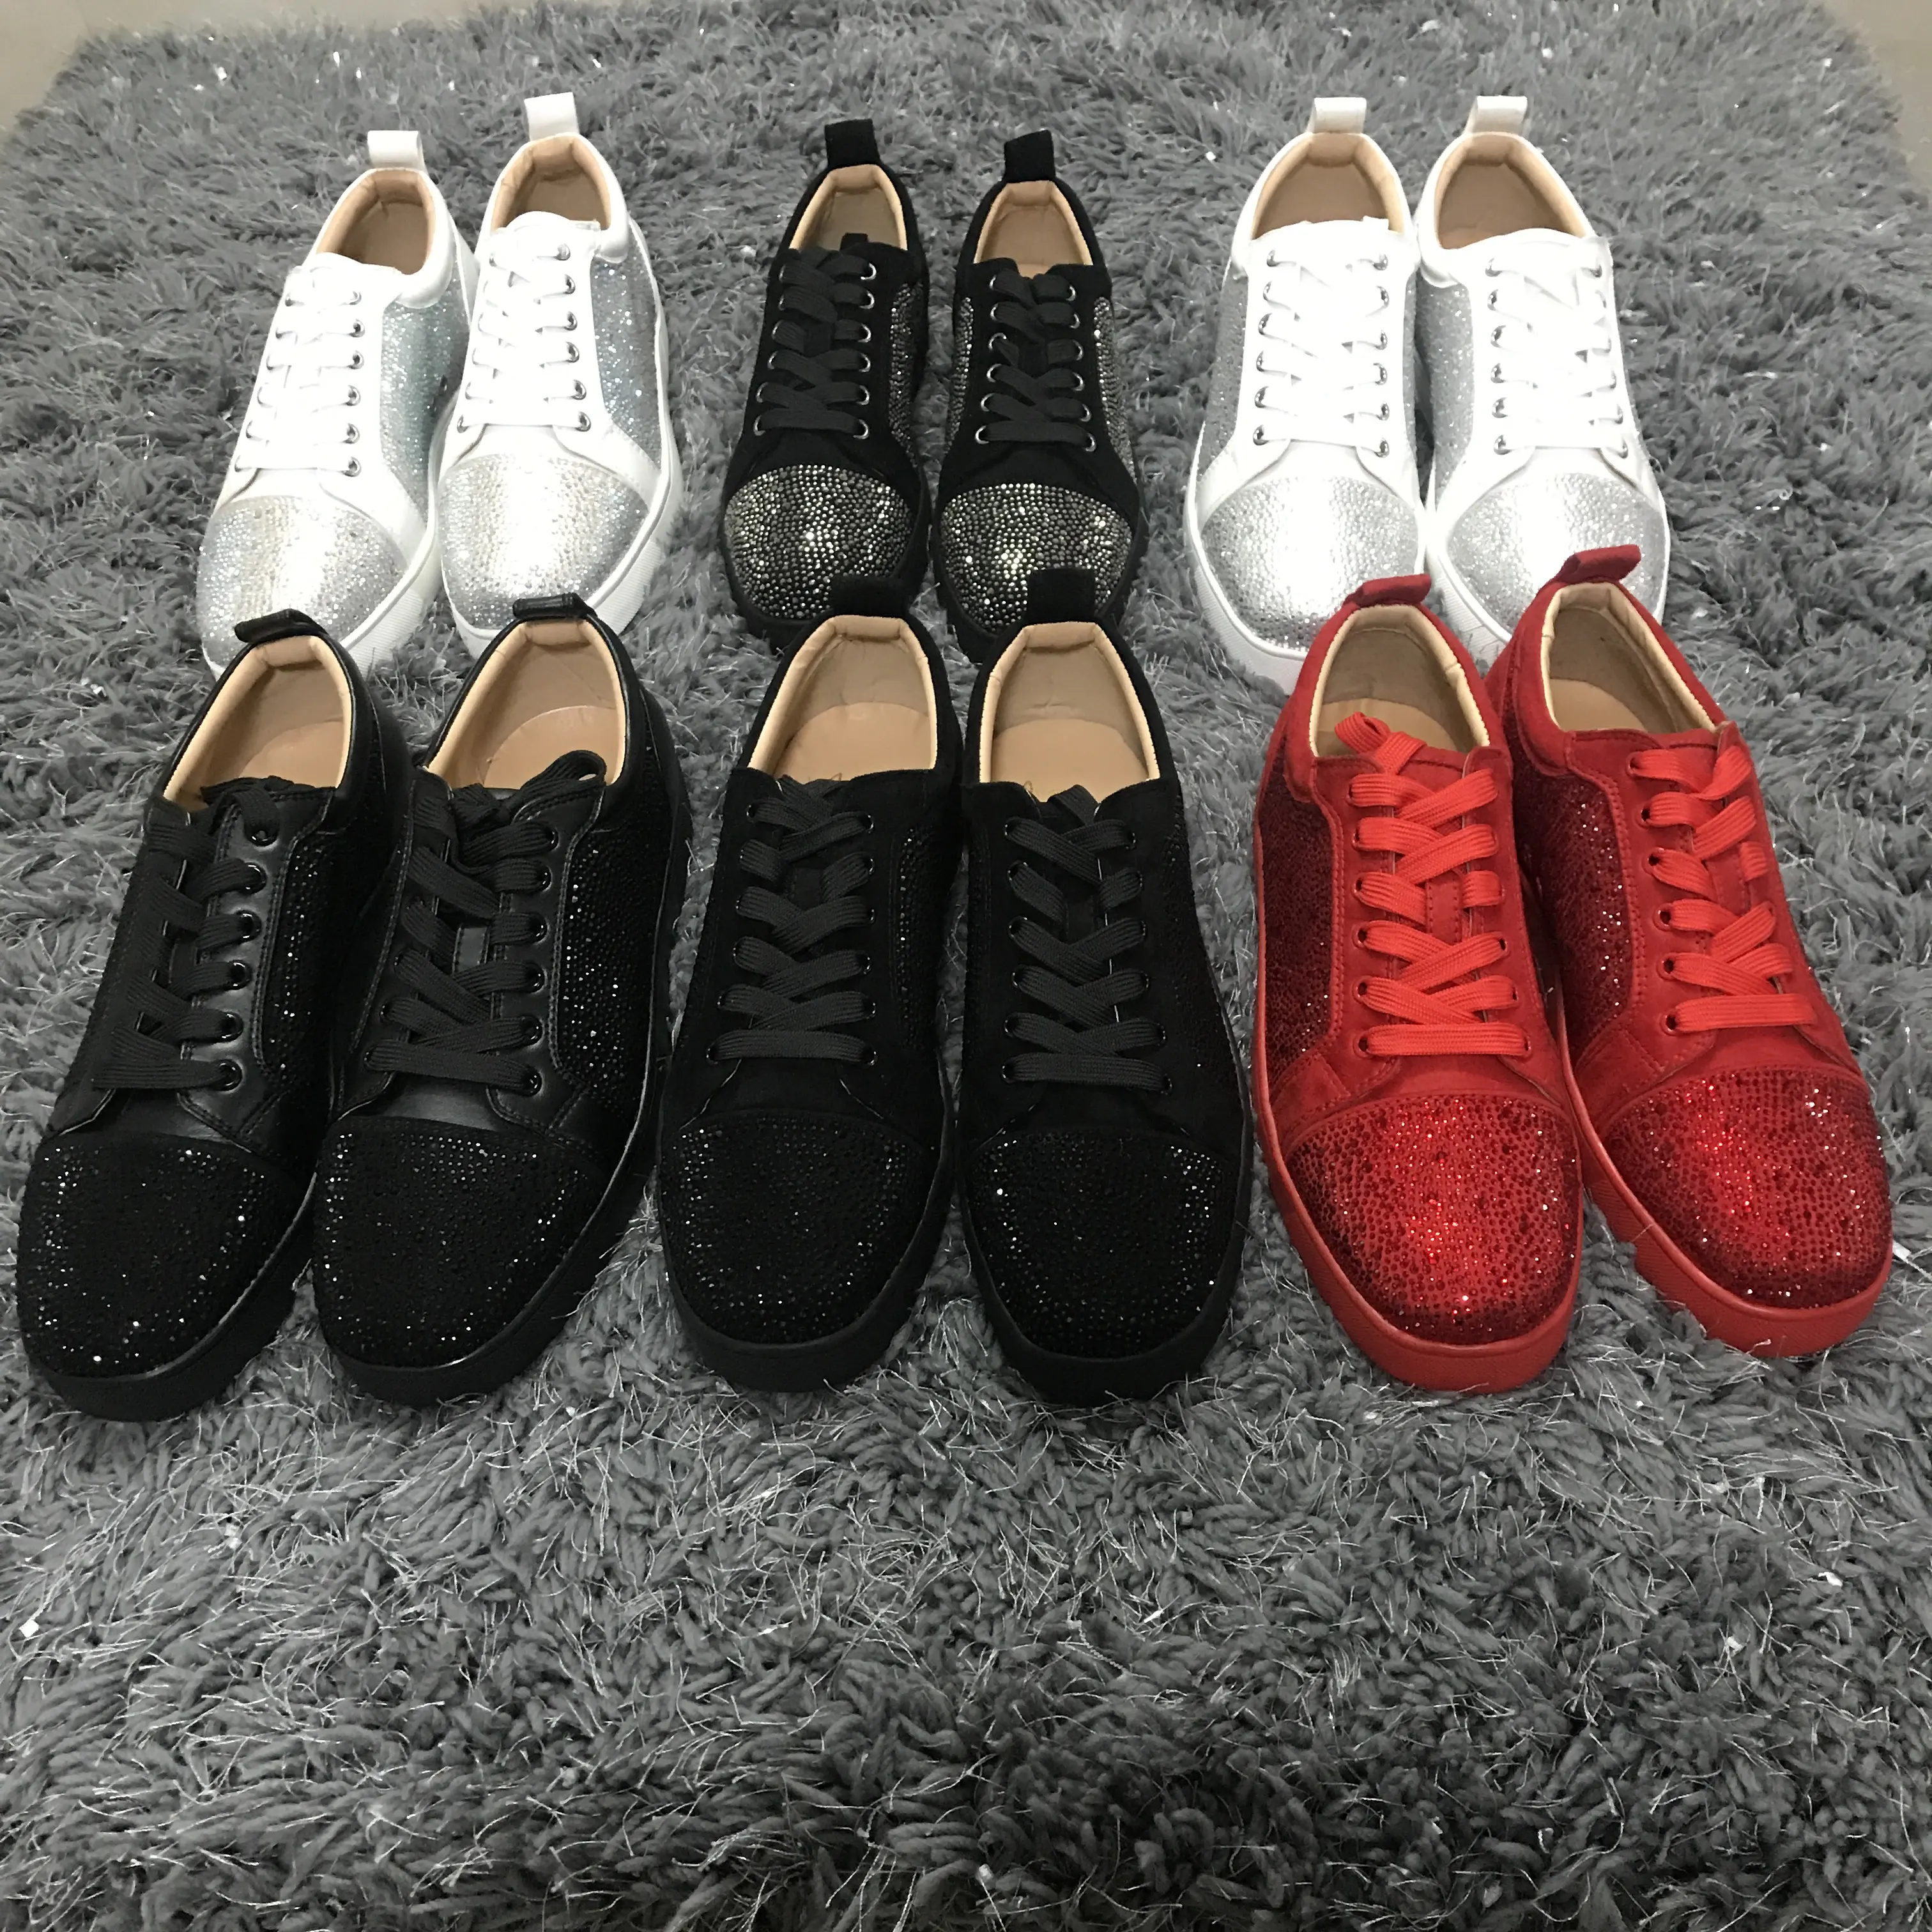 Strass de couro genuíno, sapatos masculinos de fundo vermelho de marca famosa para mulheres